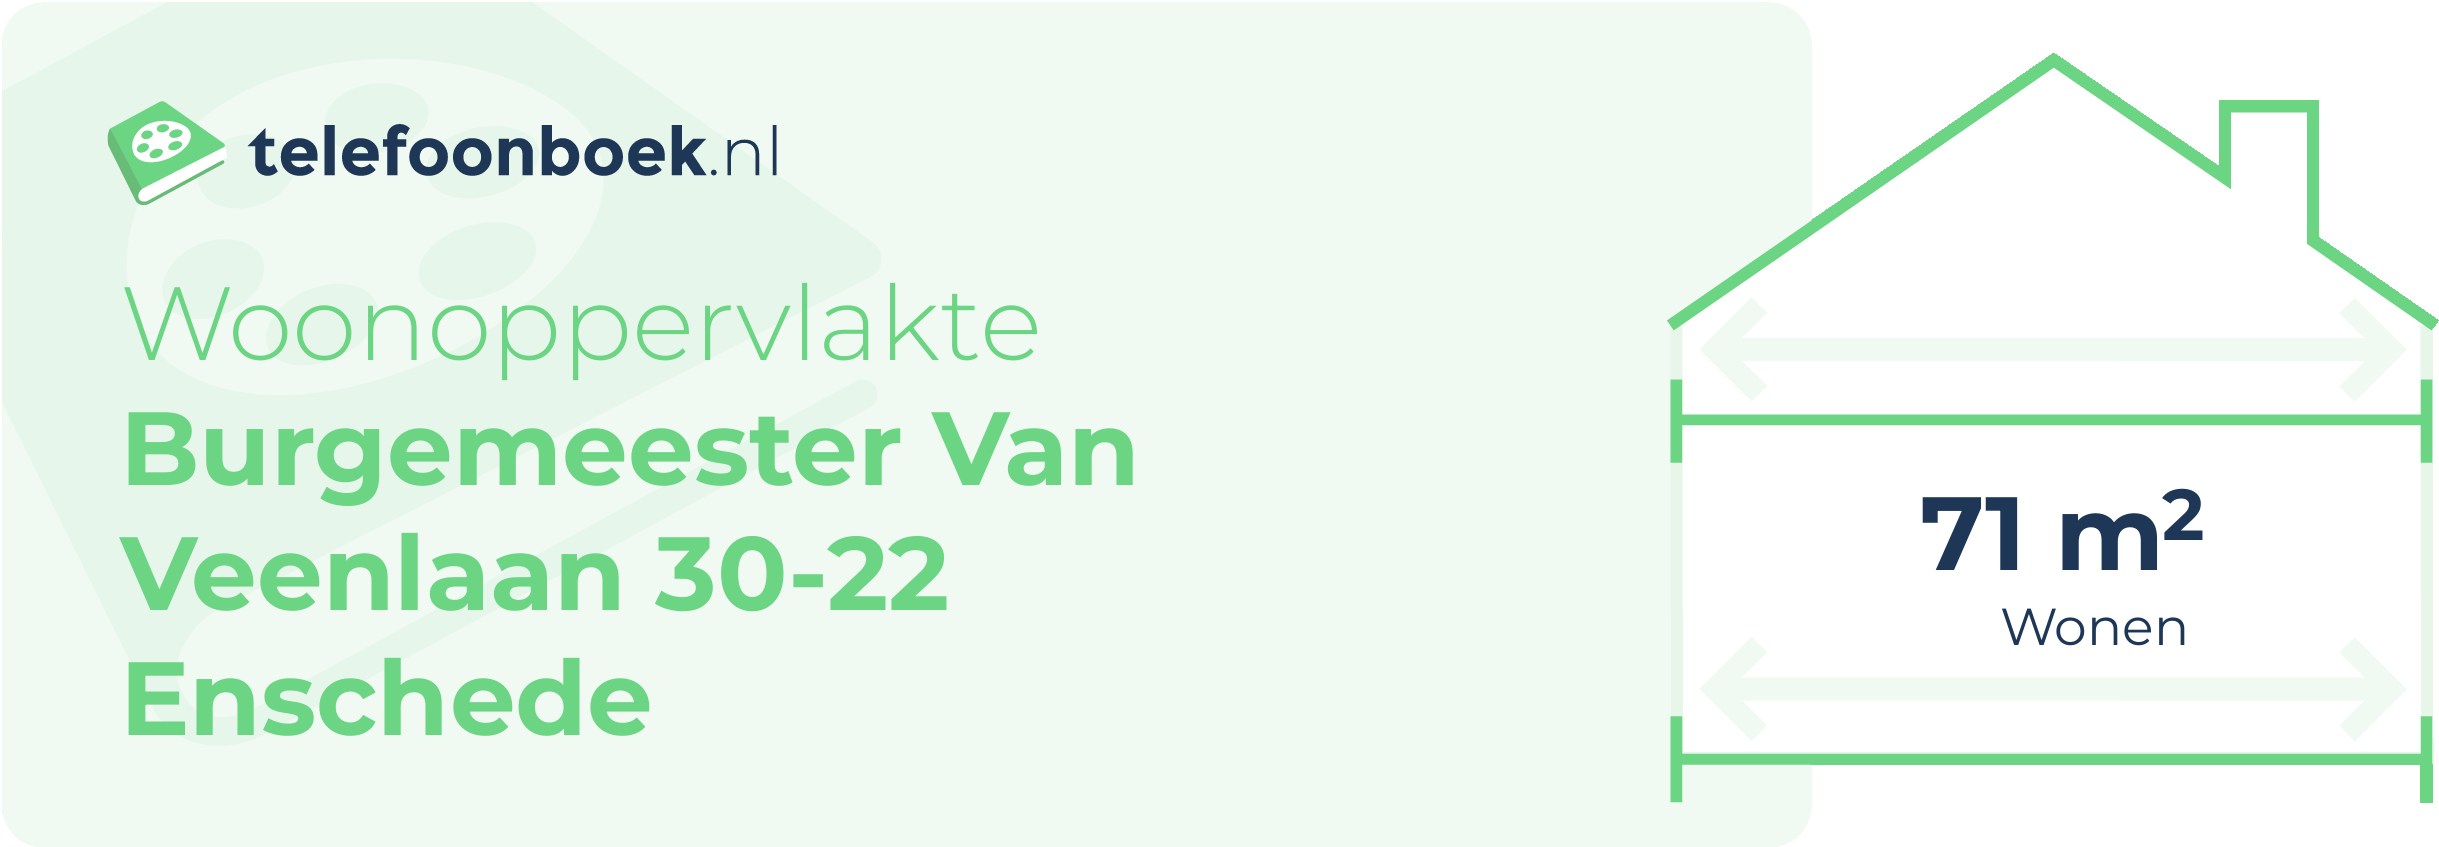 Woonoppervlakte Burgemeester Van Veenlaan 30-22 Enschede